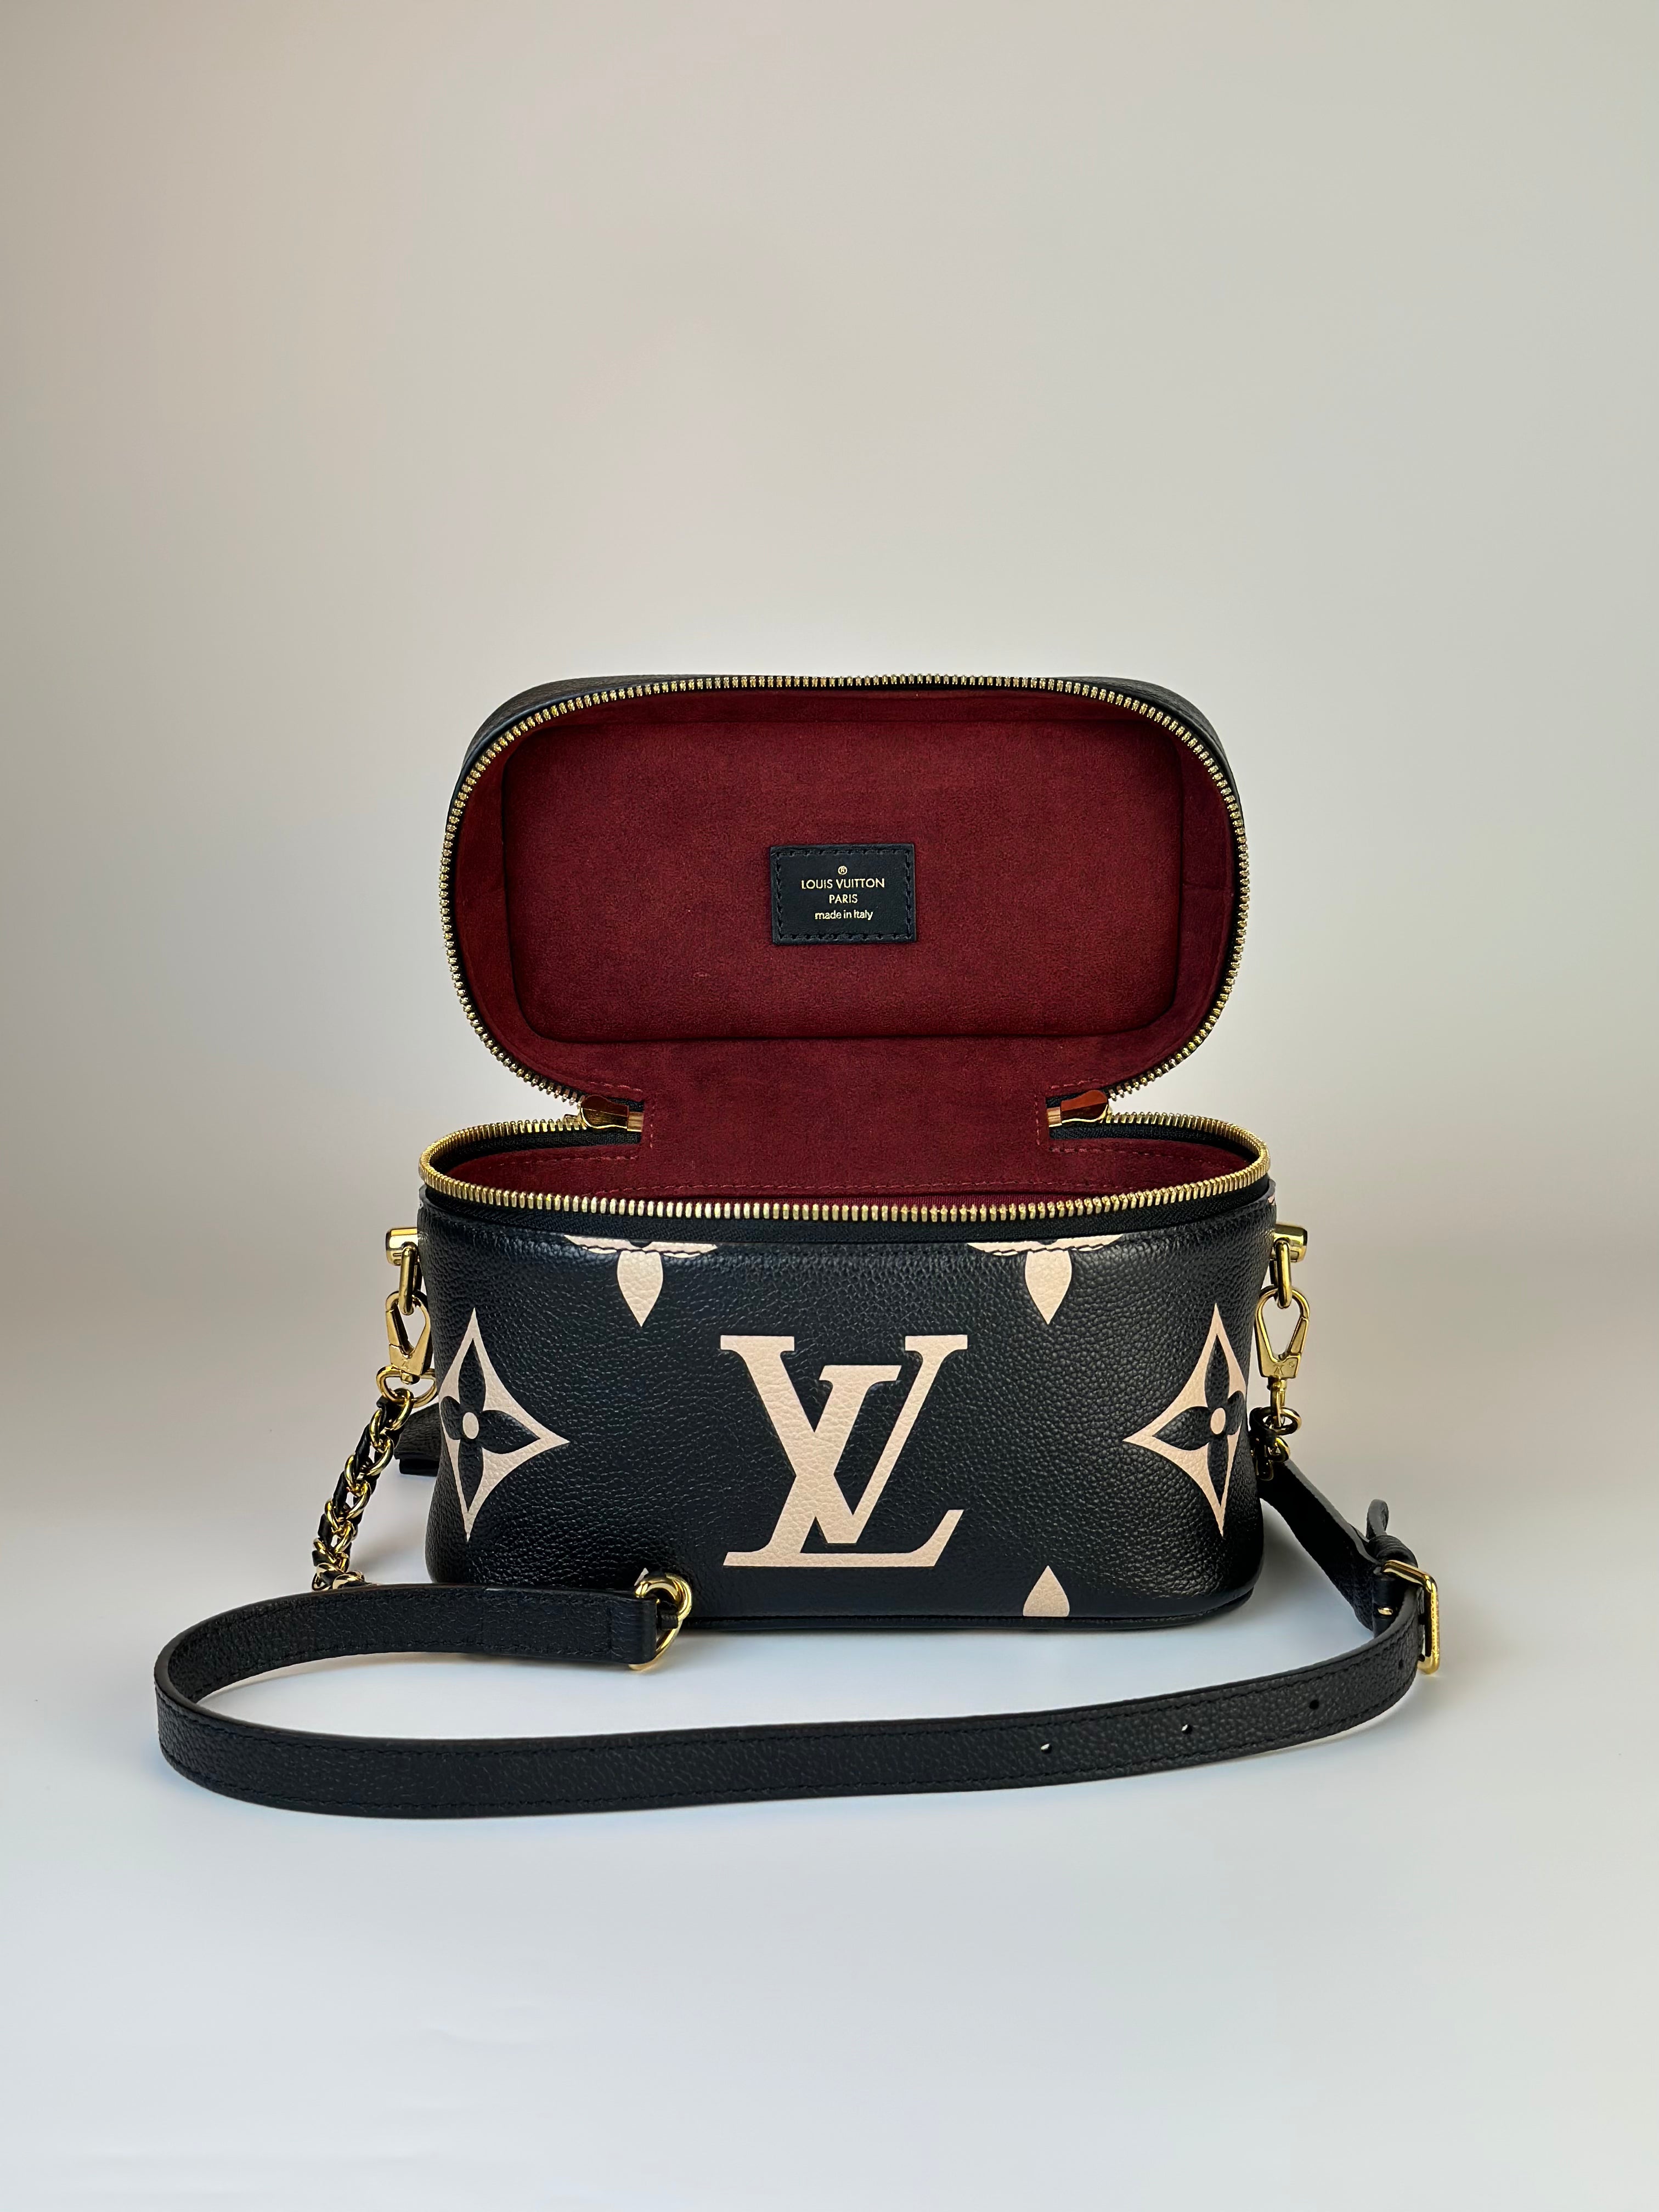 Louis Vuitton Vanity PM Black/Beige Empreinte Leather Auction